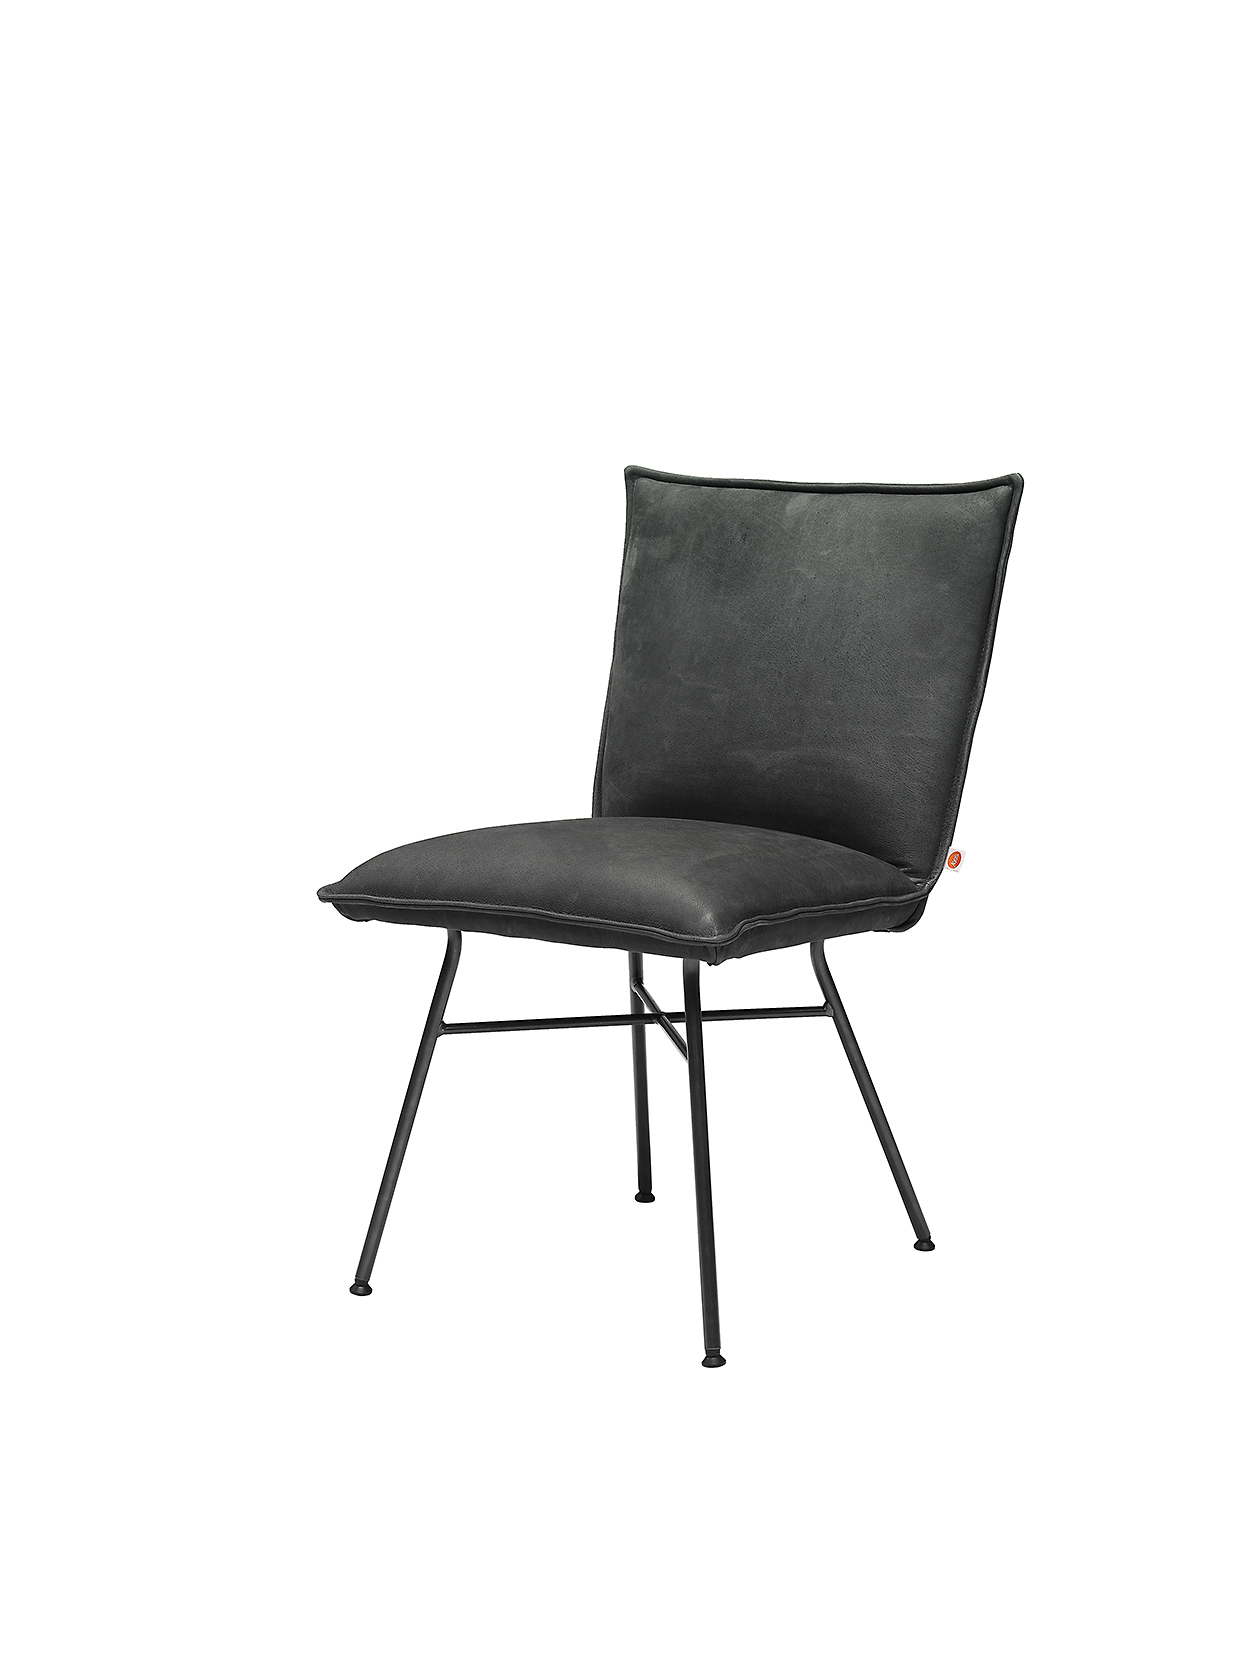 Sanne Chair Without Arm Aurula Black Pers LR ZS 8720153744591